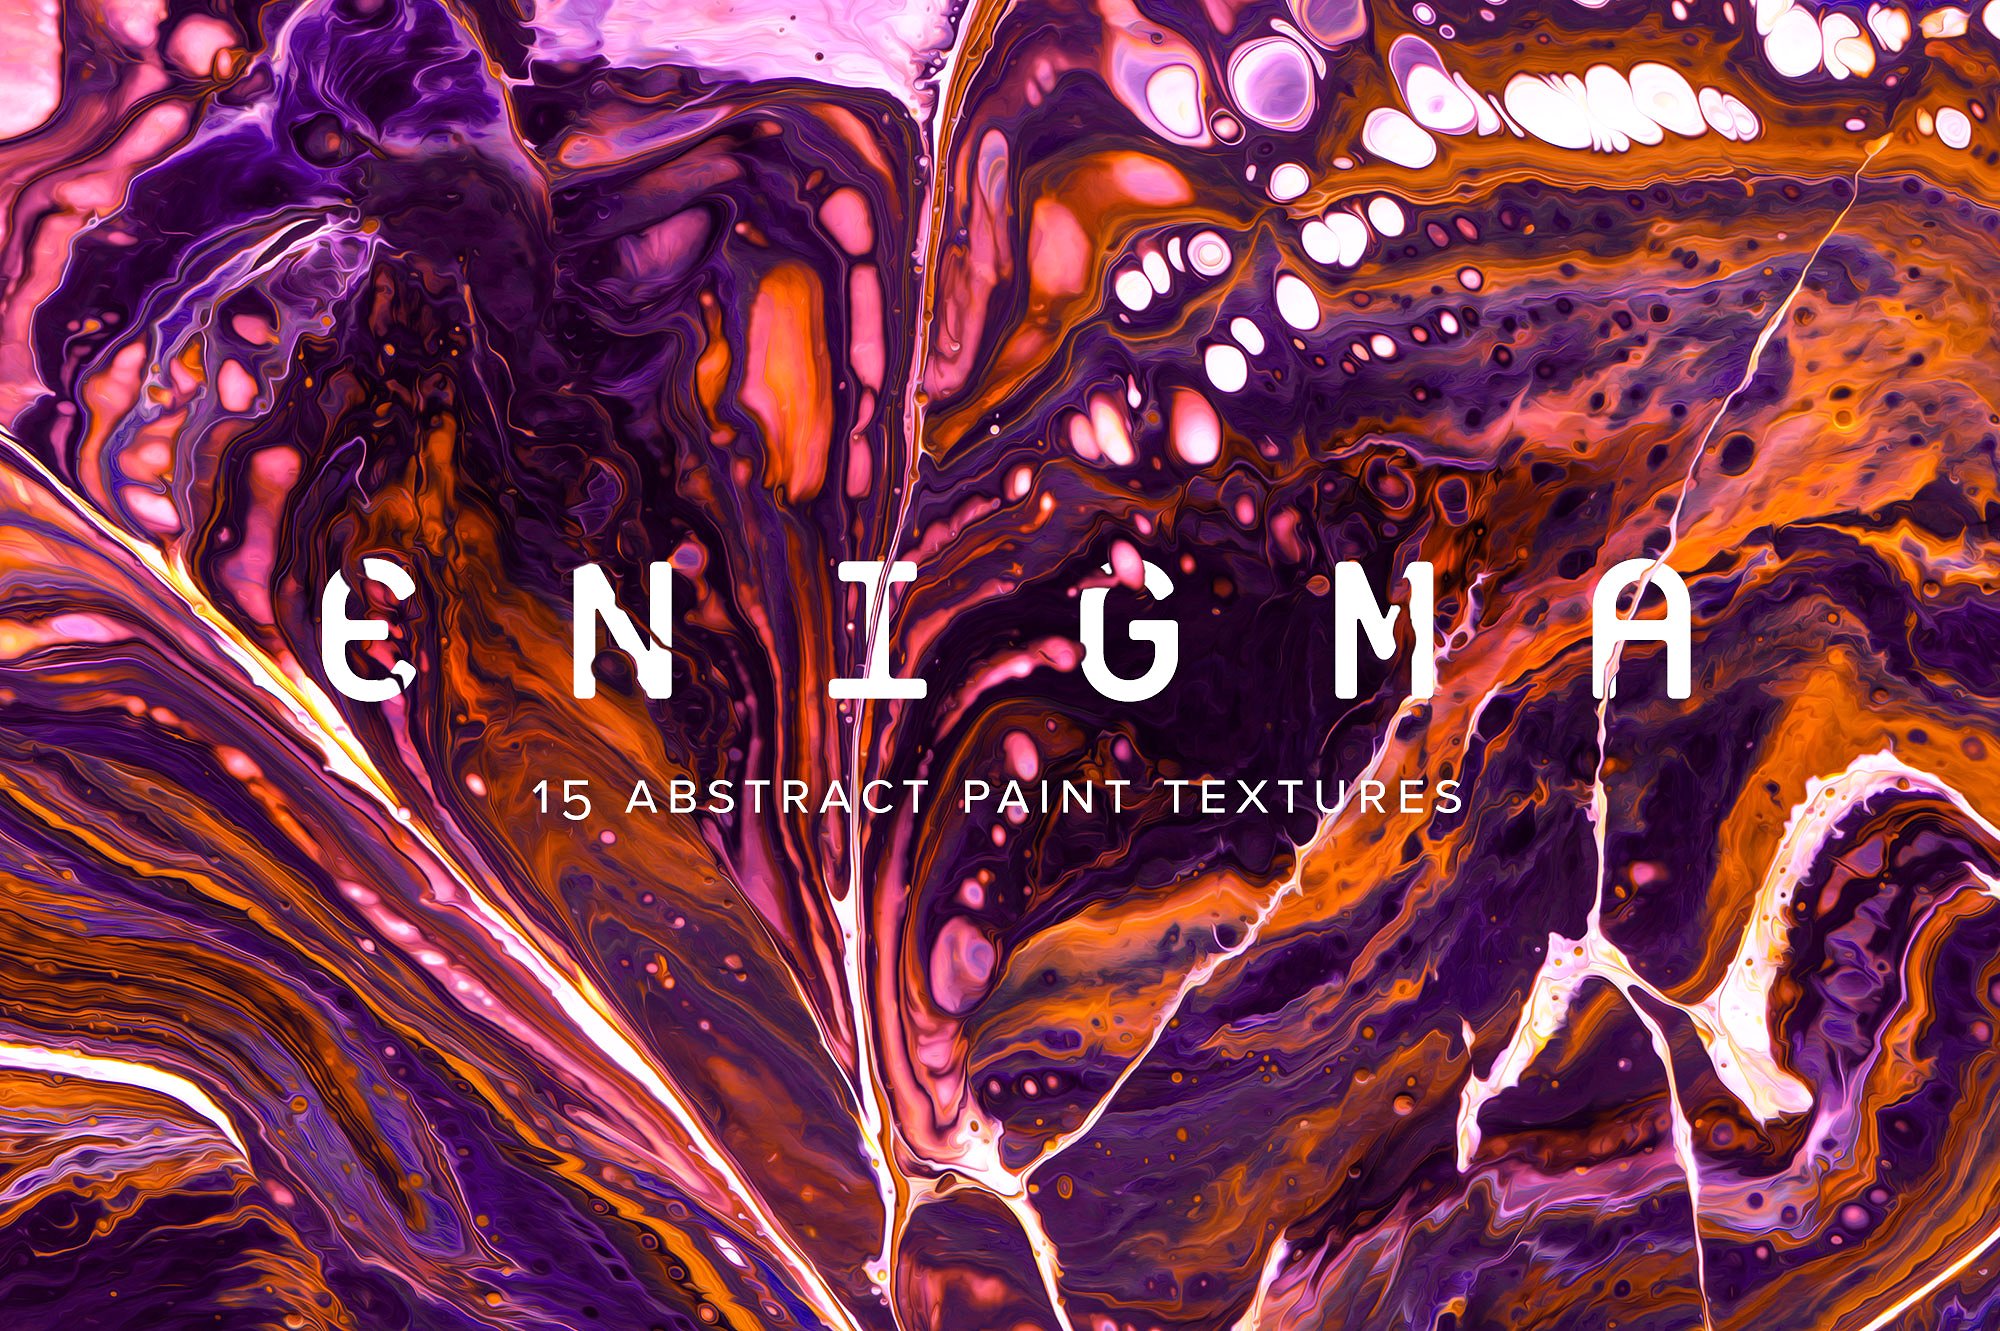 创意抽象纹理系列：抽象油漆丙烯酸流体绘画大理石背景纹理 Enigma: 15 Abstract Paint Textures插图